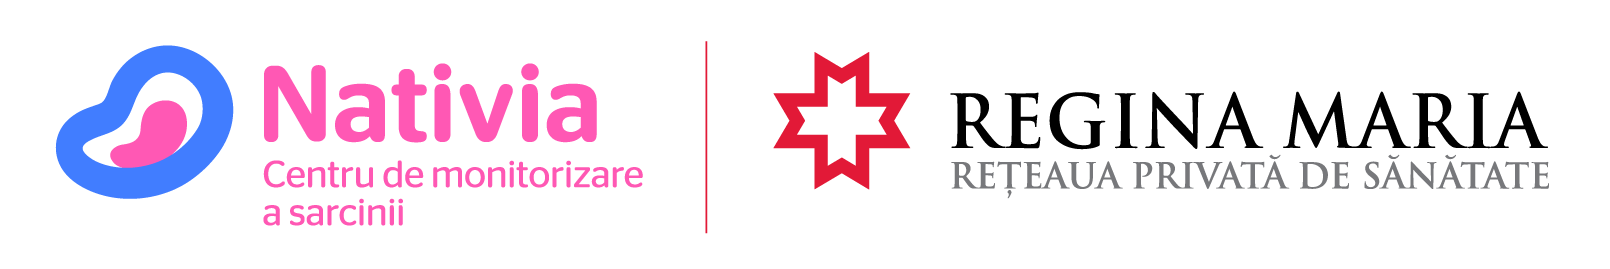 Nativia Logo